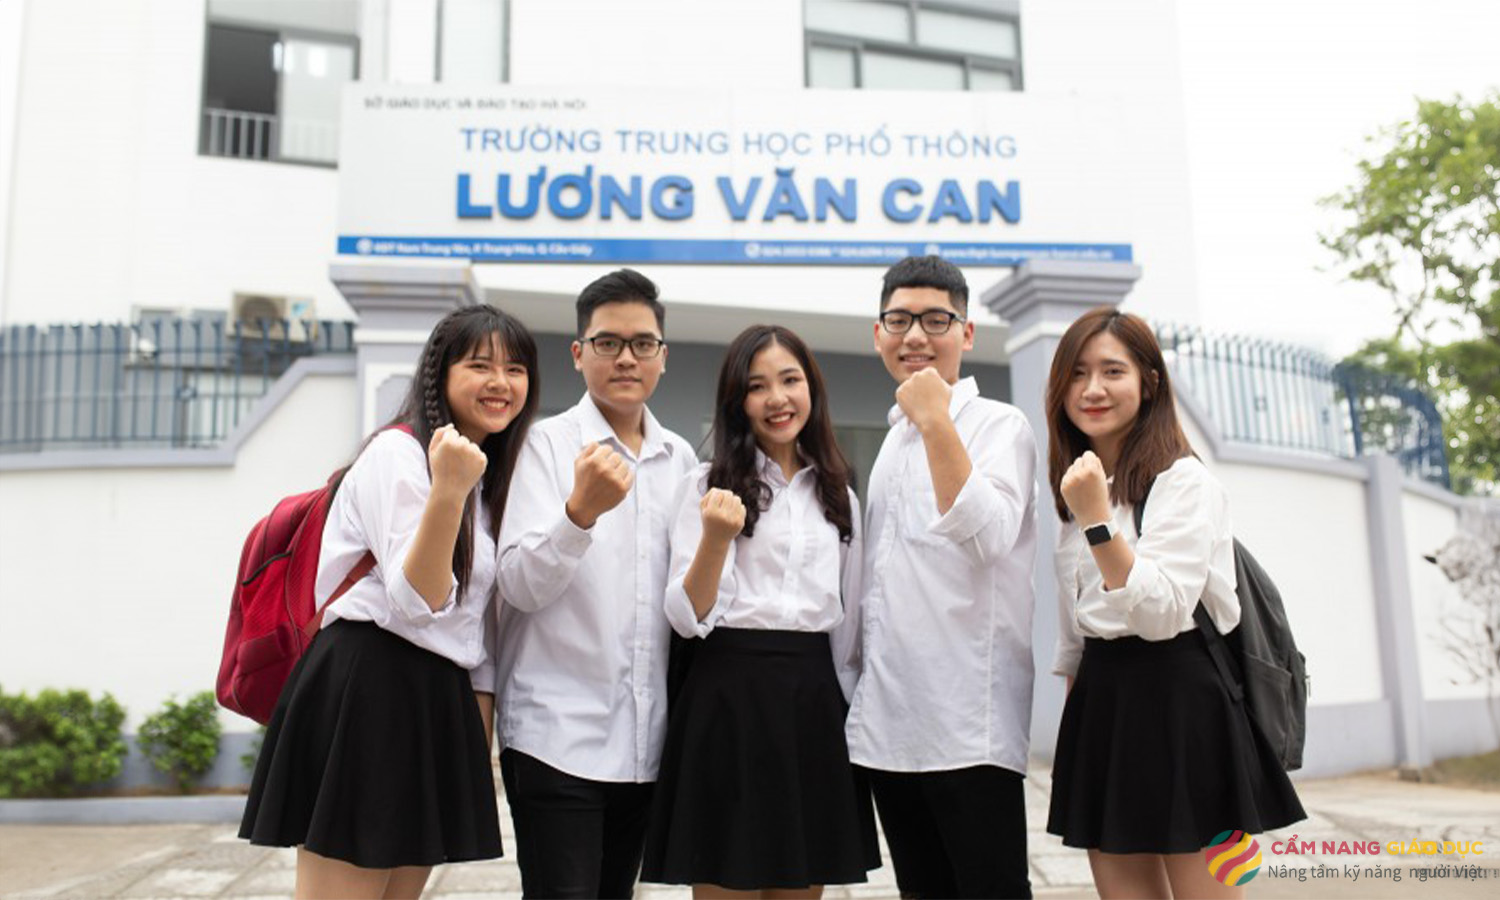 THPT Lương Văn Can - nơi cất giữ những kỉ niệm tuyệt vời nhất của tuổi học sinh